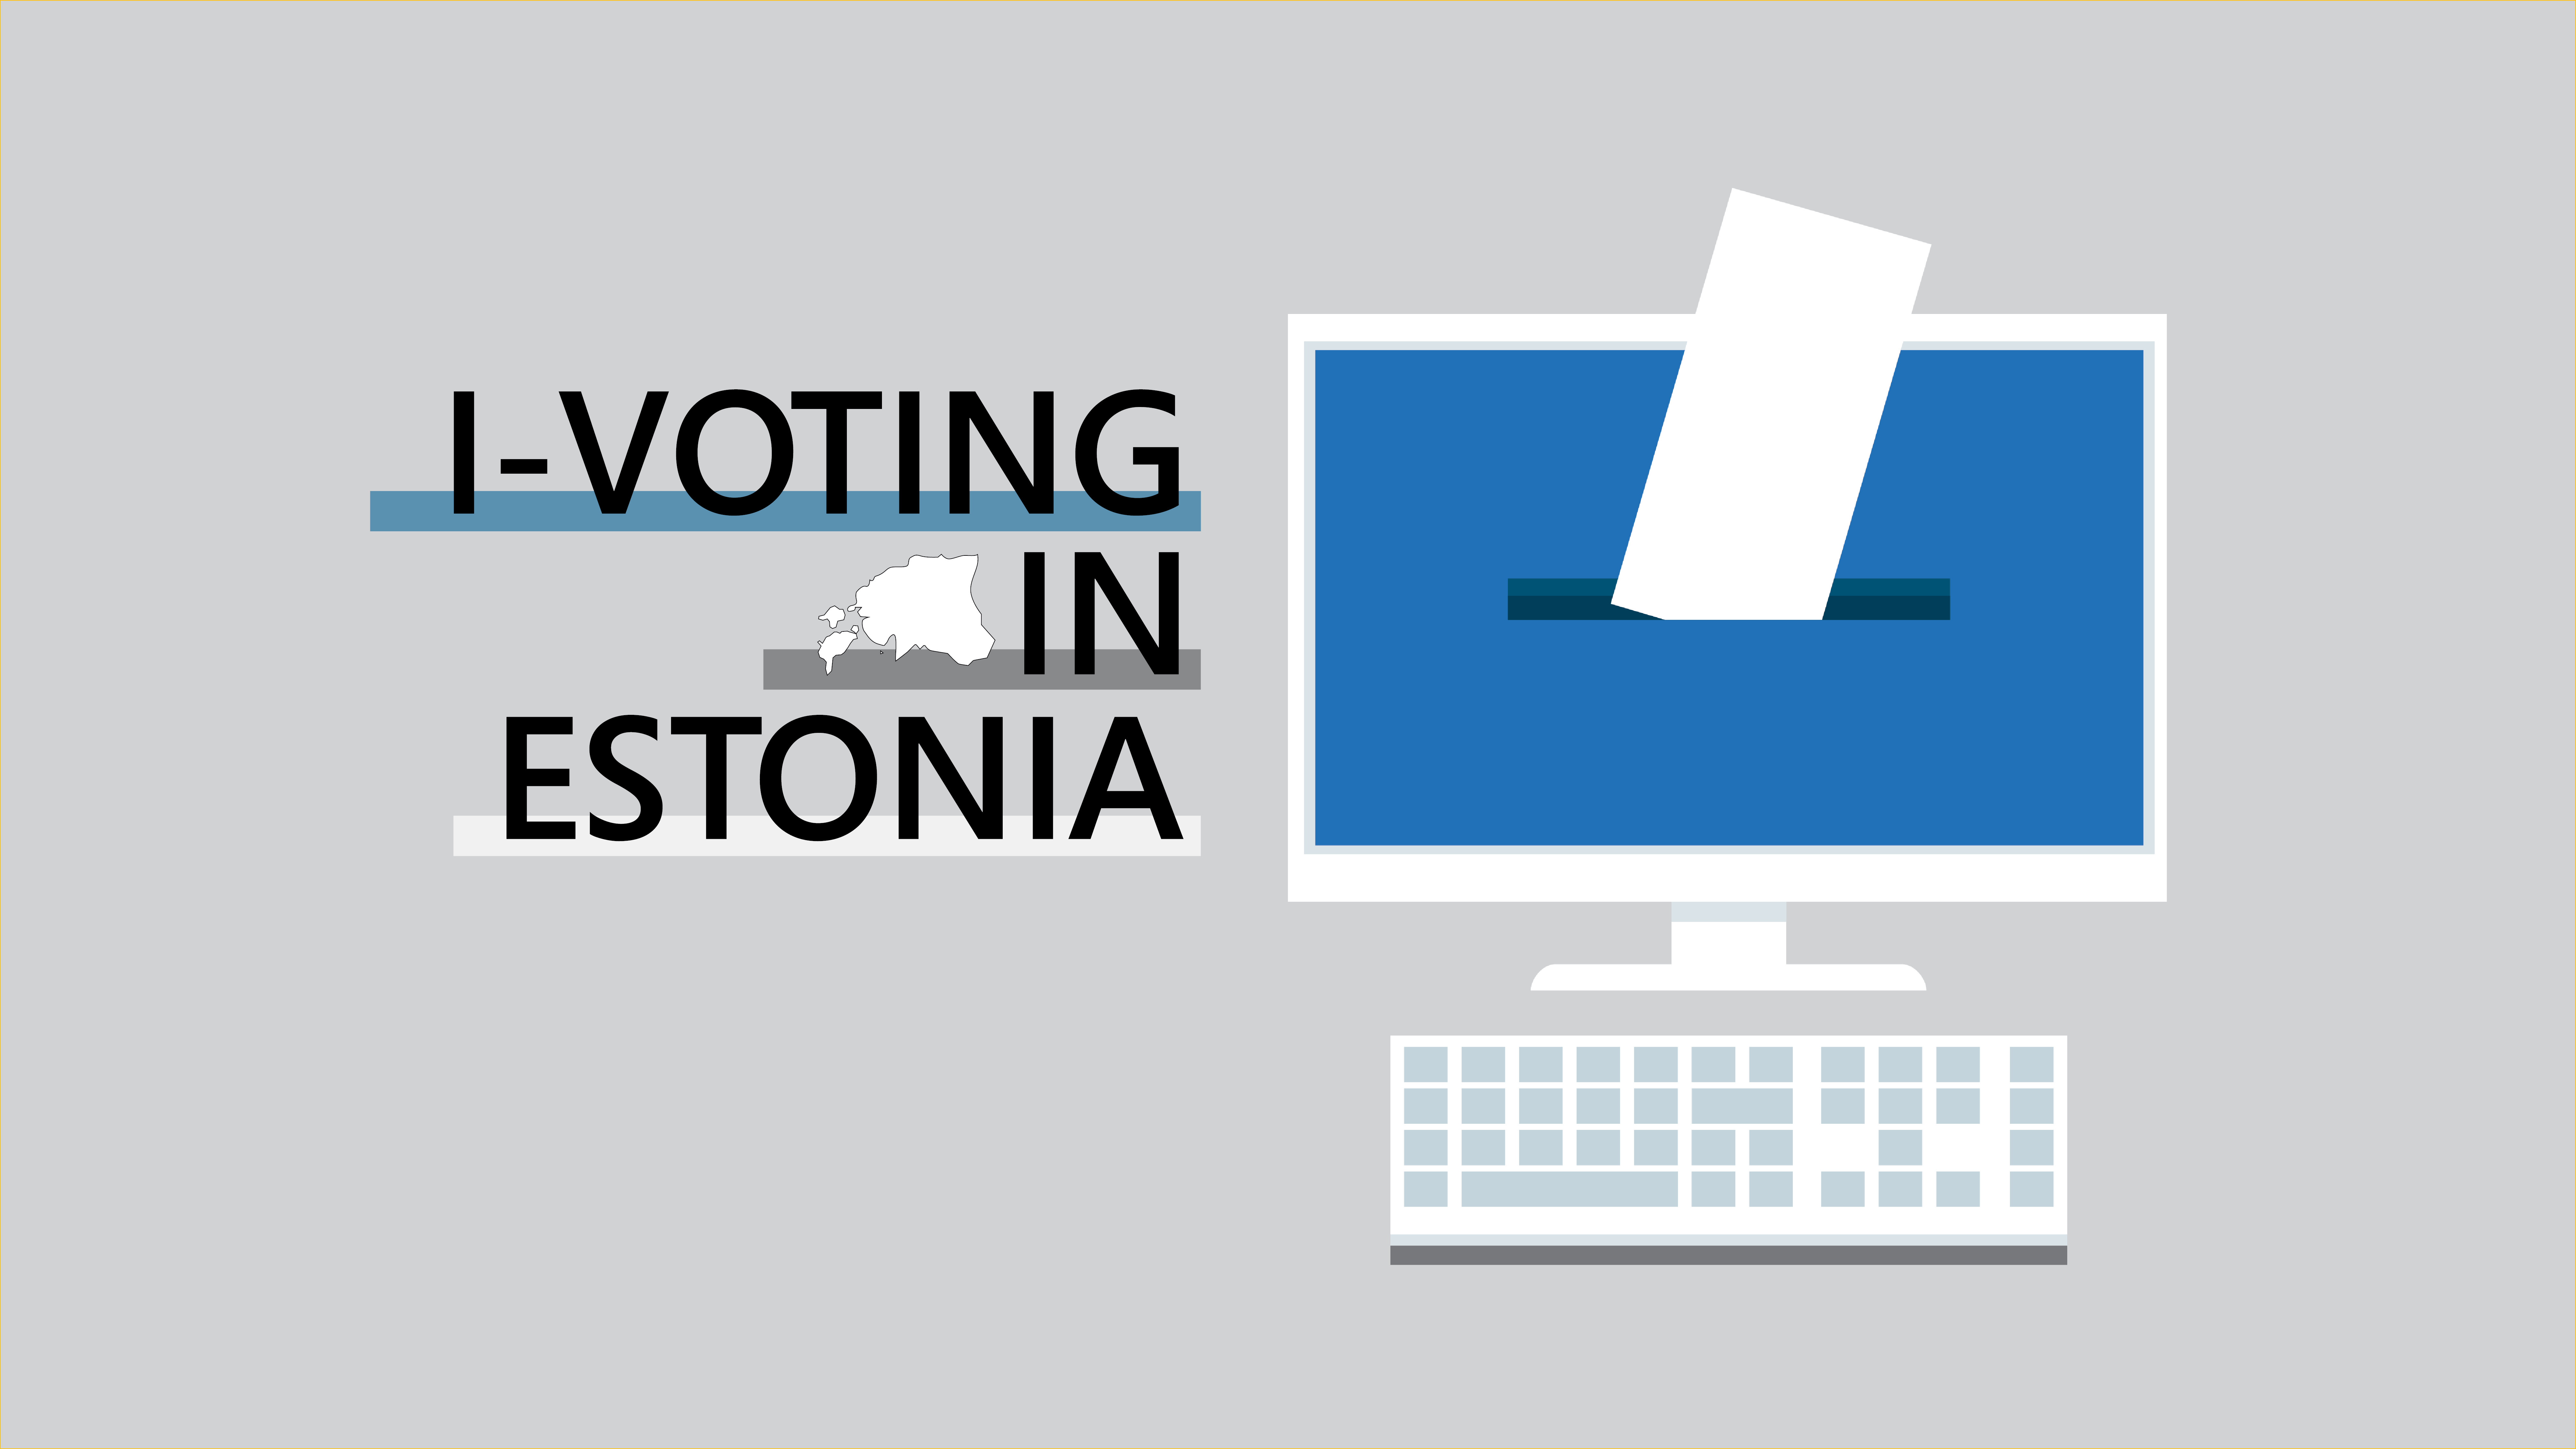 ivoting in estonia graphic